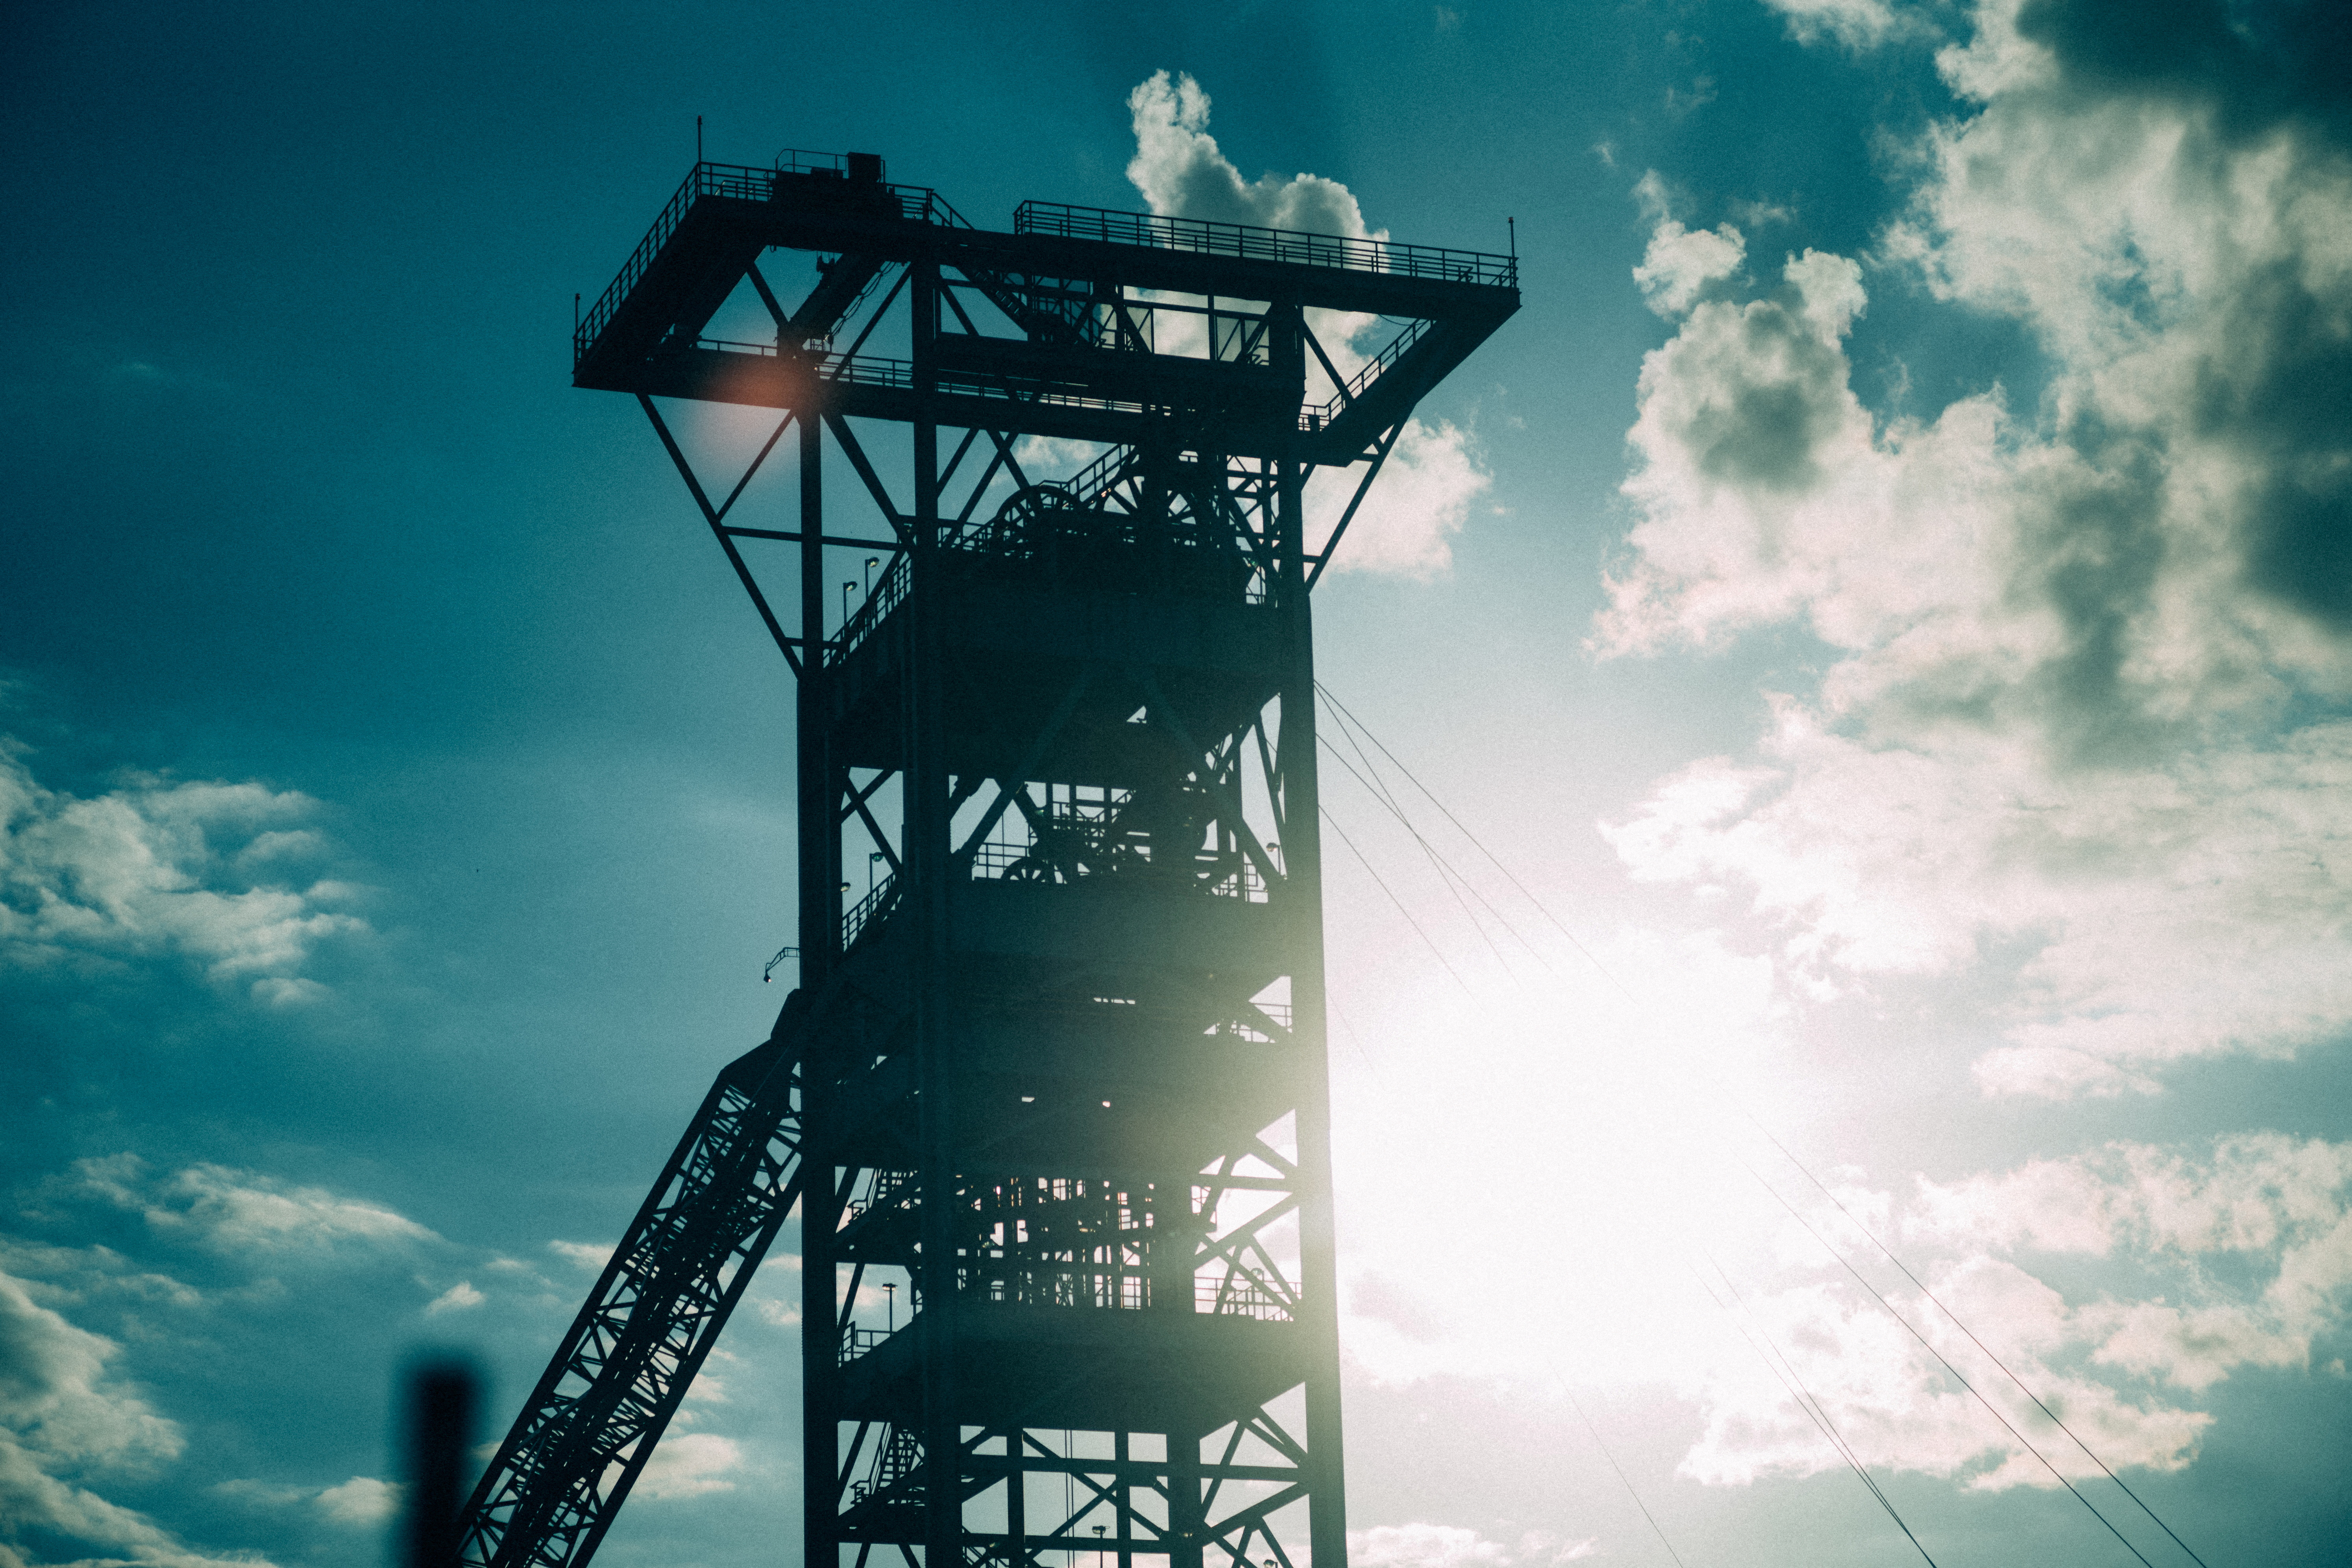 De Beers Venetia Mine in South Africa